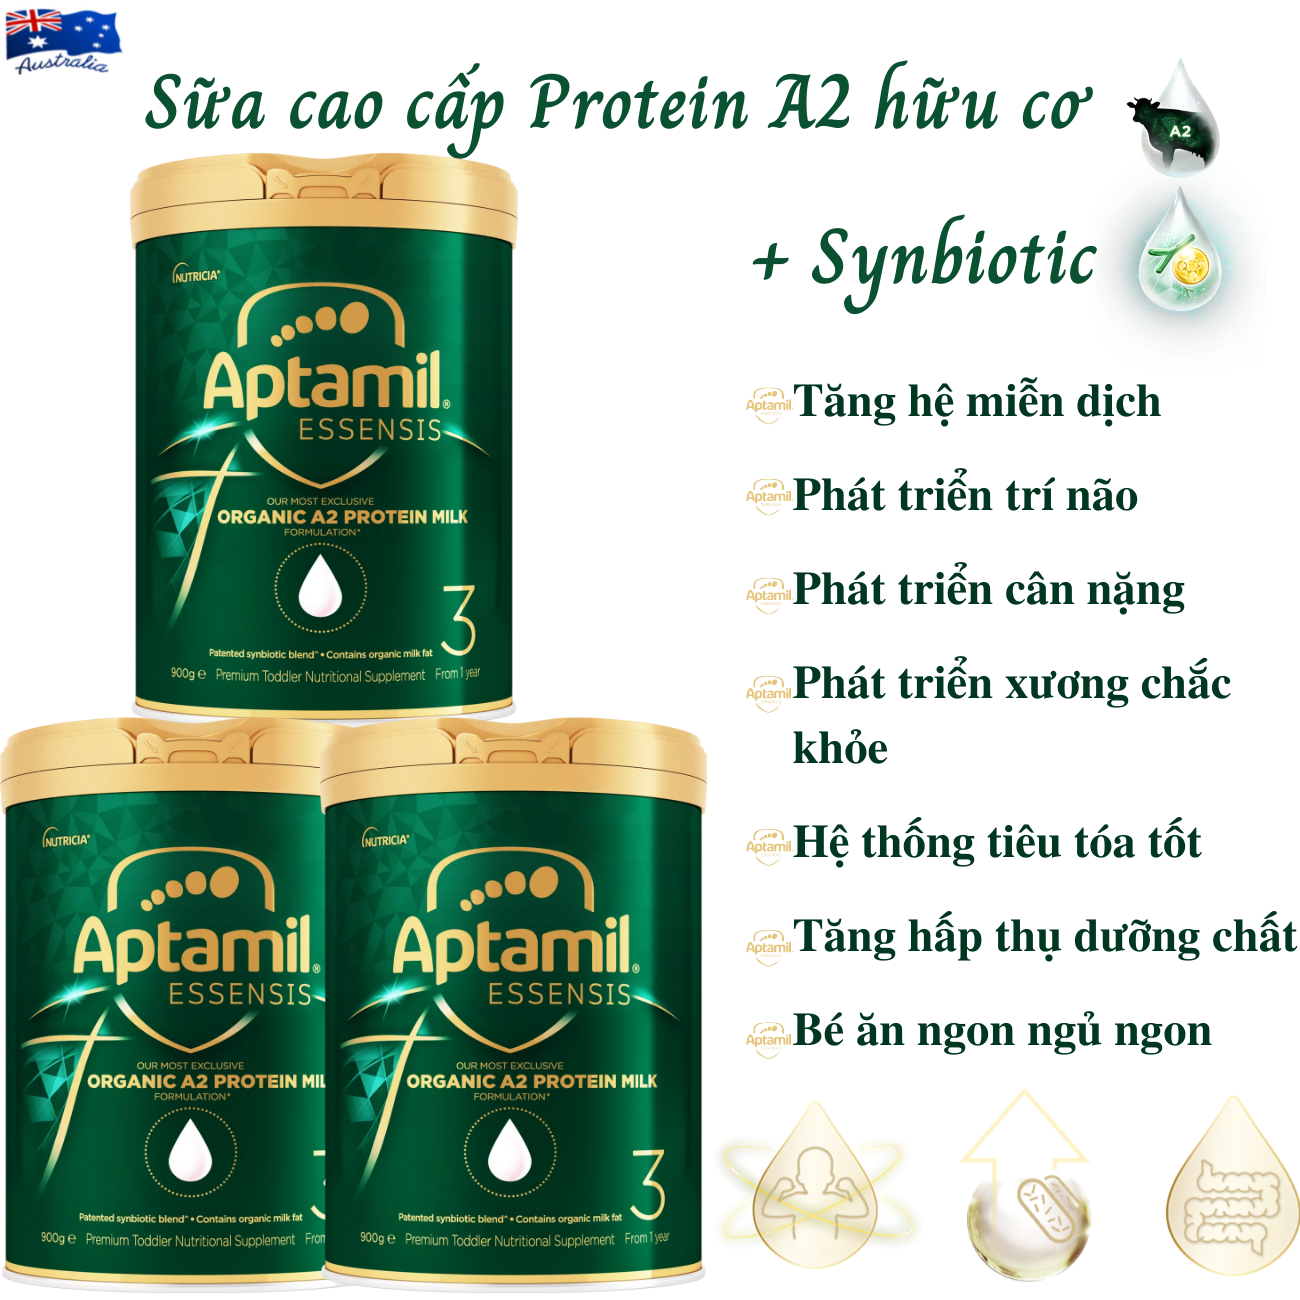 Sữa tăng chiều cao cho trẻ từ 1 tuổi Aptamil Essensis Protein A2 Úc (Số 3)- Công thức Synbiotic độc quyền Giúp tăng cường hệ miễn dịch, hỗ trợ hệ tiêu hóa, Phát triển chiều cao, Cân nặng, trí tuệ và tăng sức đề kháng (900gx3hộp)